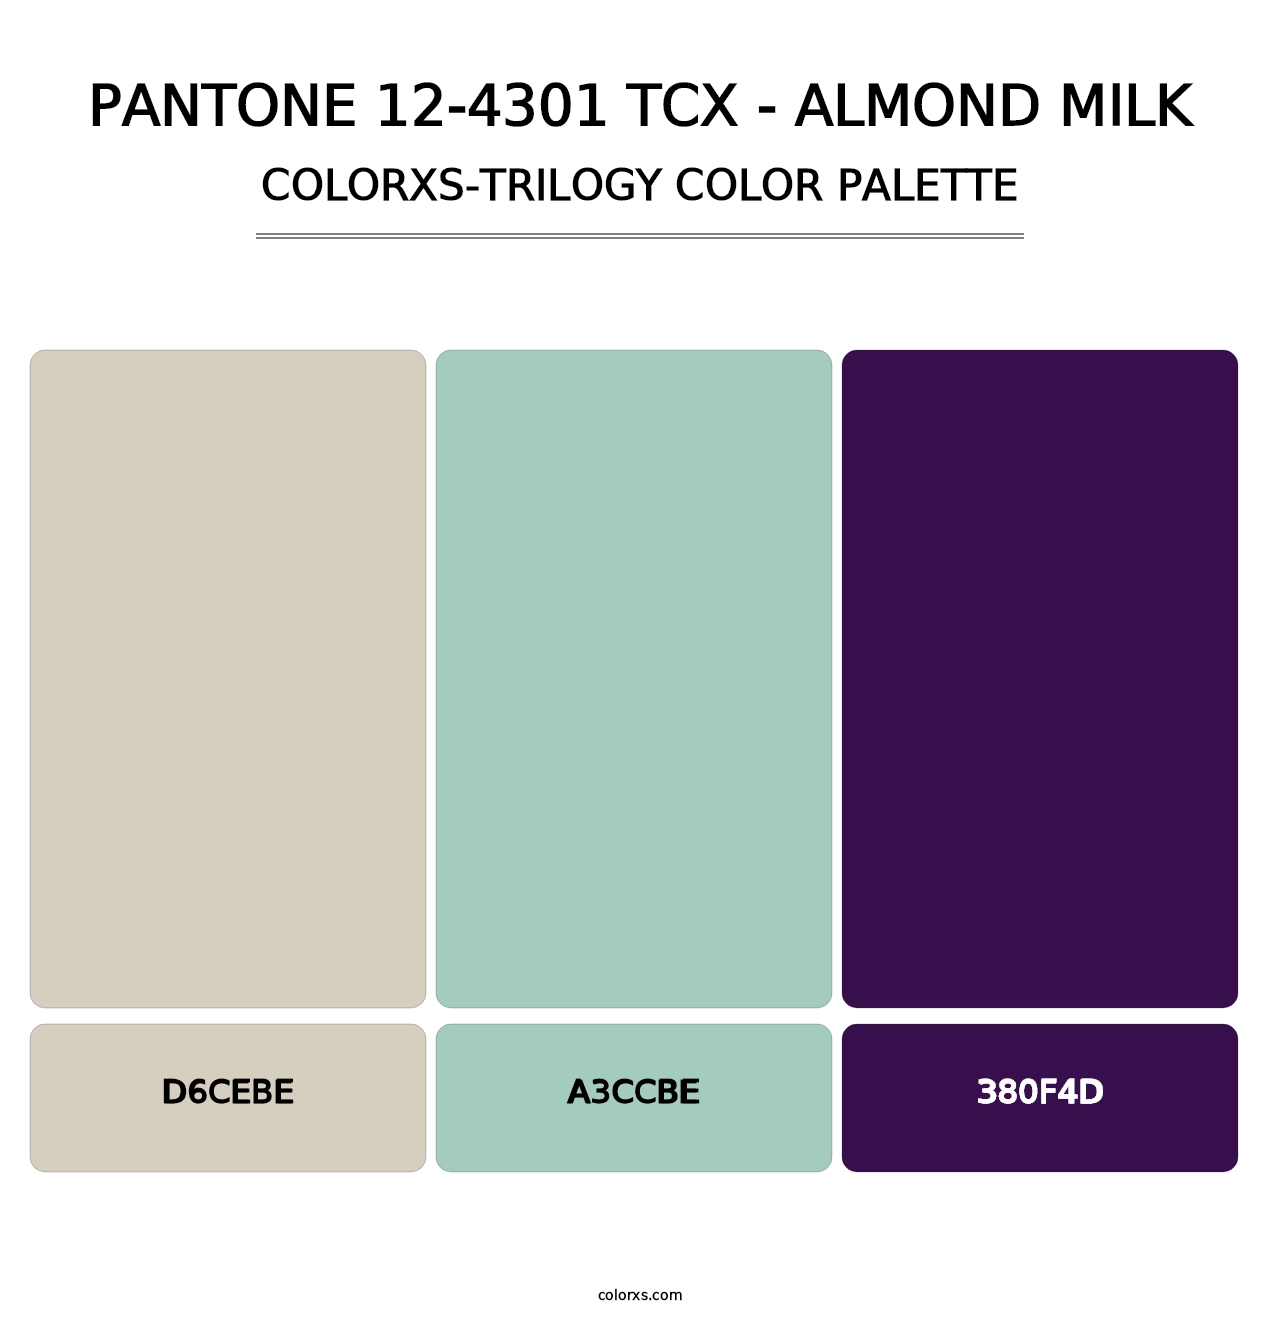 PANTONE 12-4301 TCX - Almond Milk - Colorxs Trilogy Palette